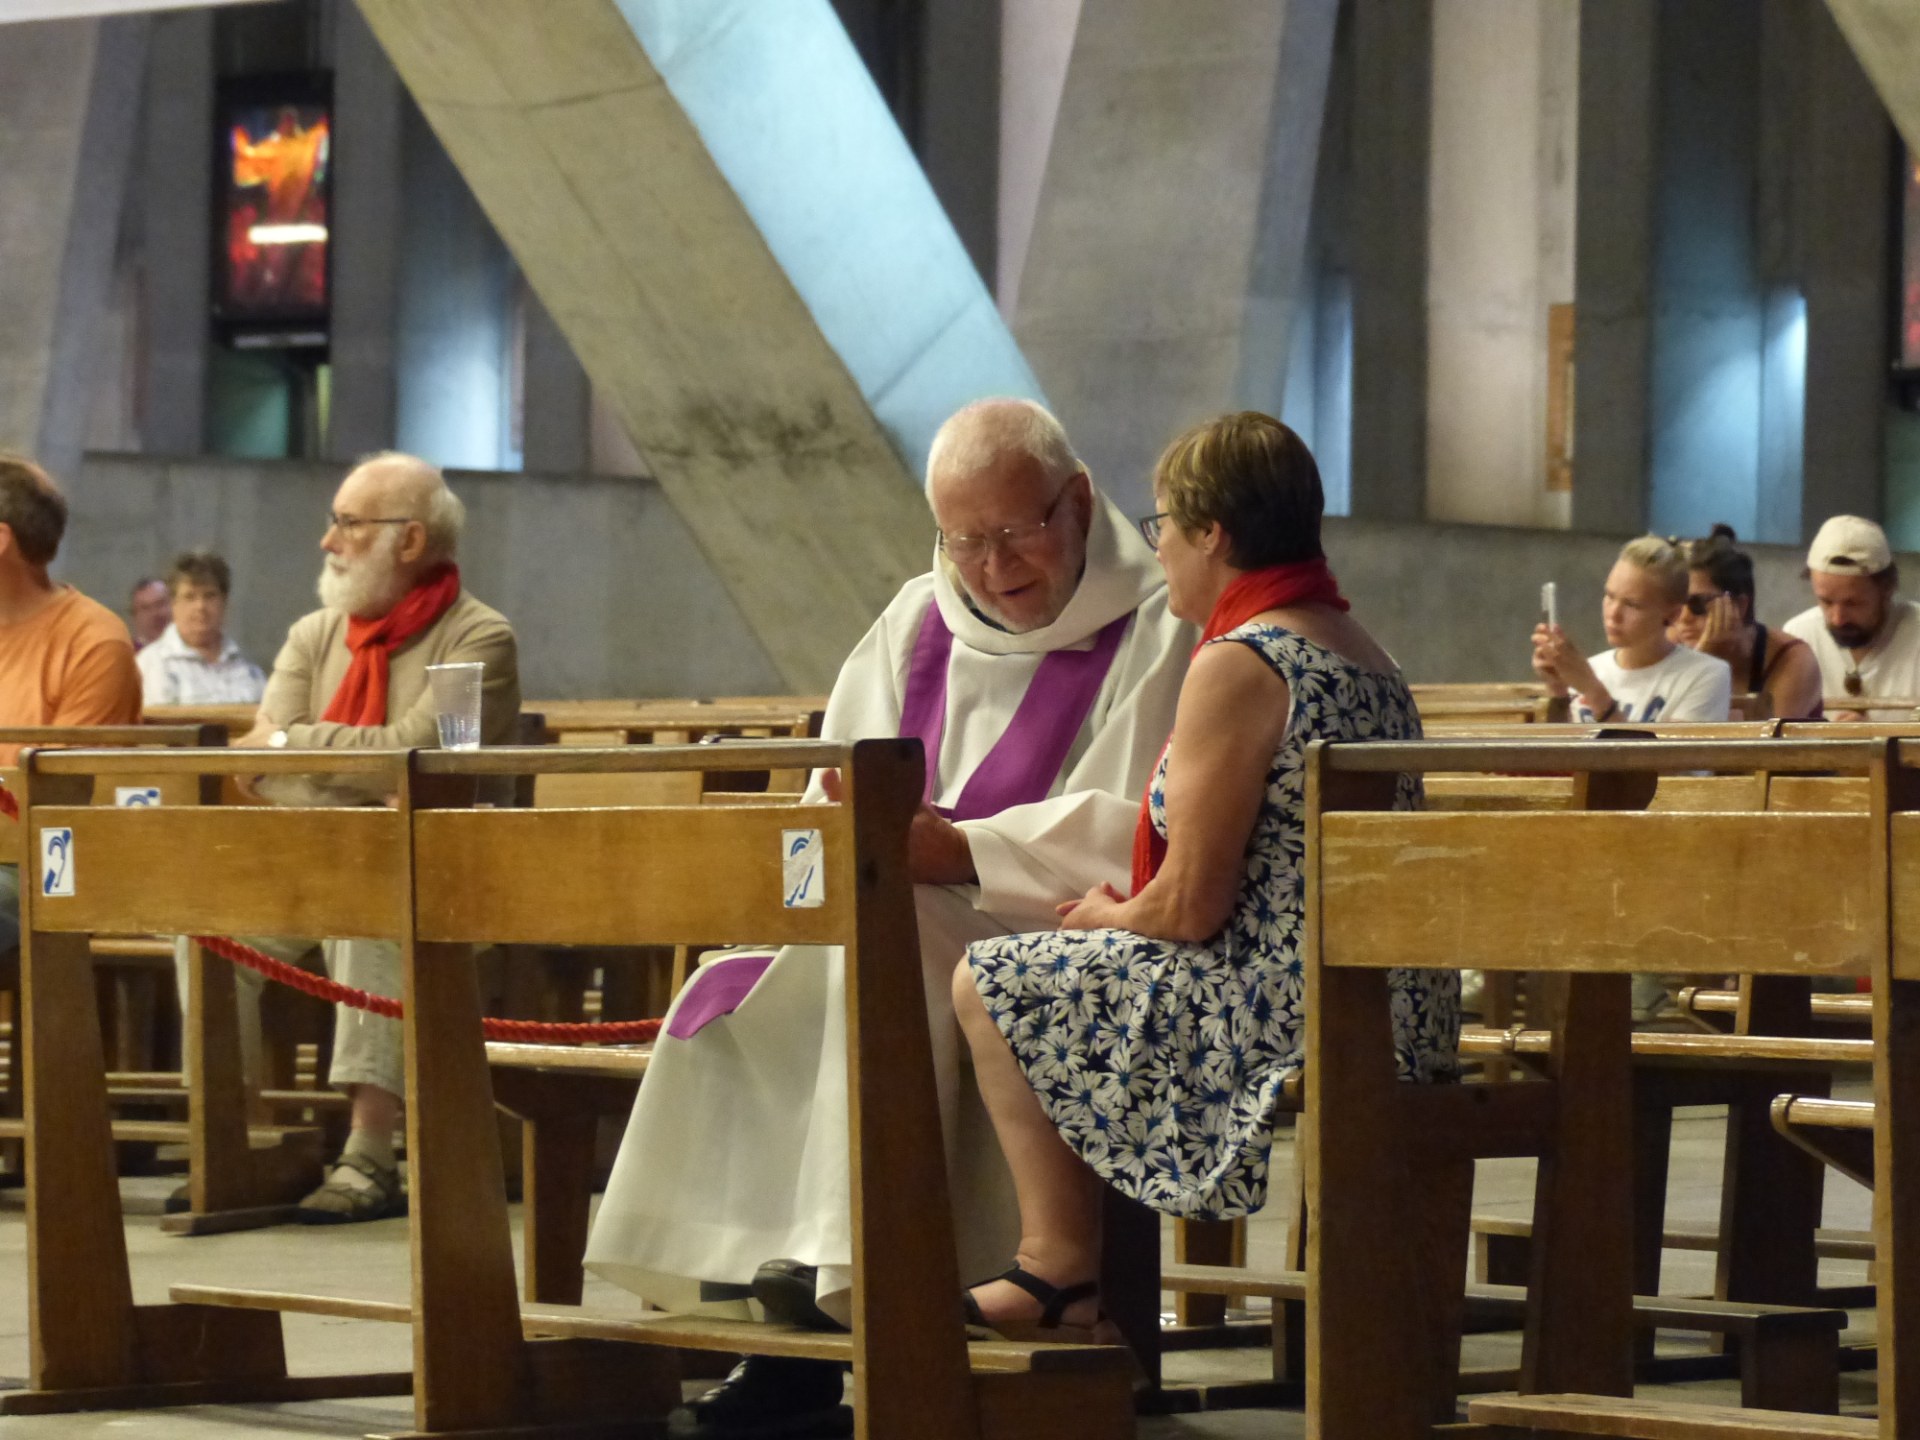 Lourdes2018-photos Sacrmt reconciliation (31)